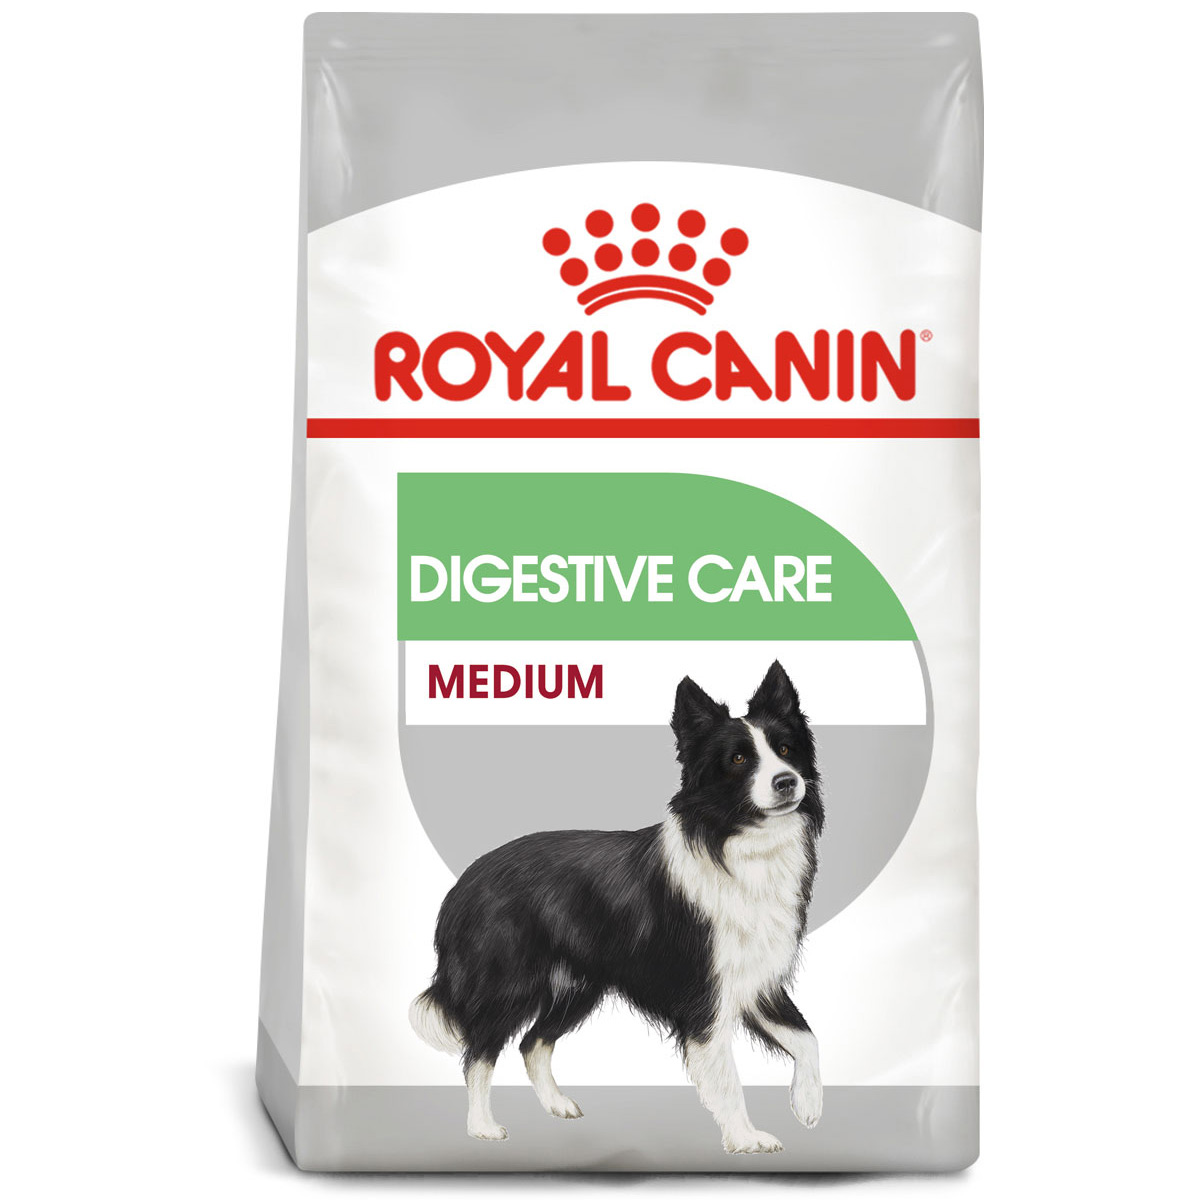 ROYAL CANIN DIGESTIVE CARE MEDIUM Trockenfutter für mittelgroße Hunde mit emfindlicher Verdauung 3kg von Royal Canin